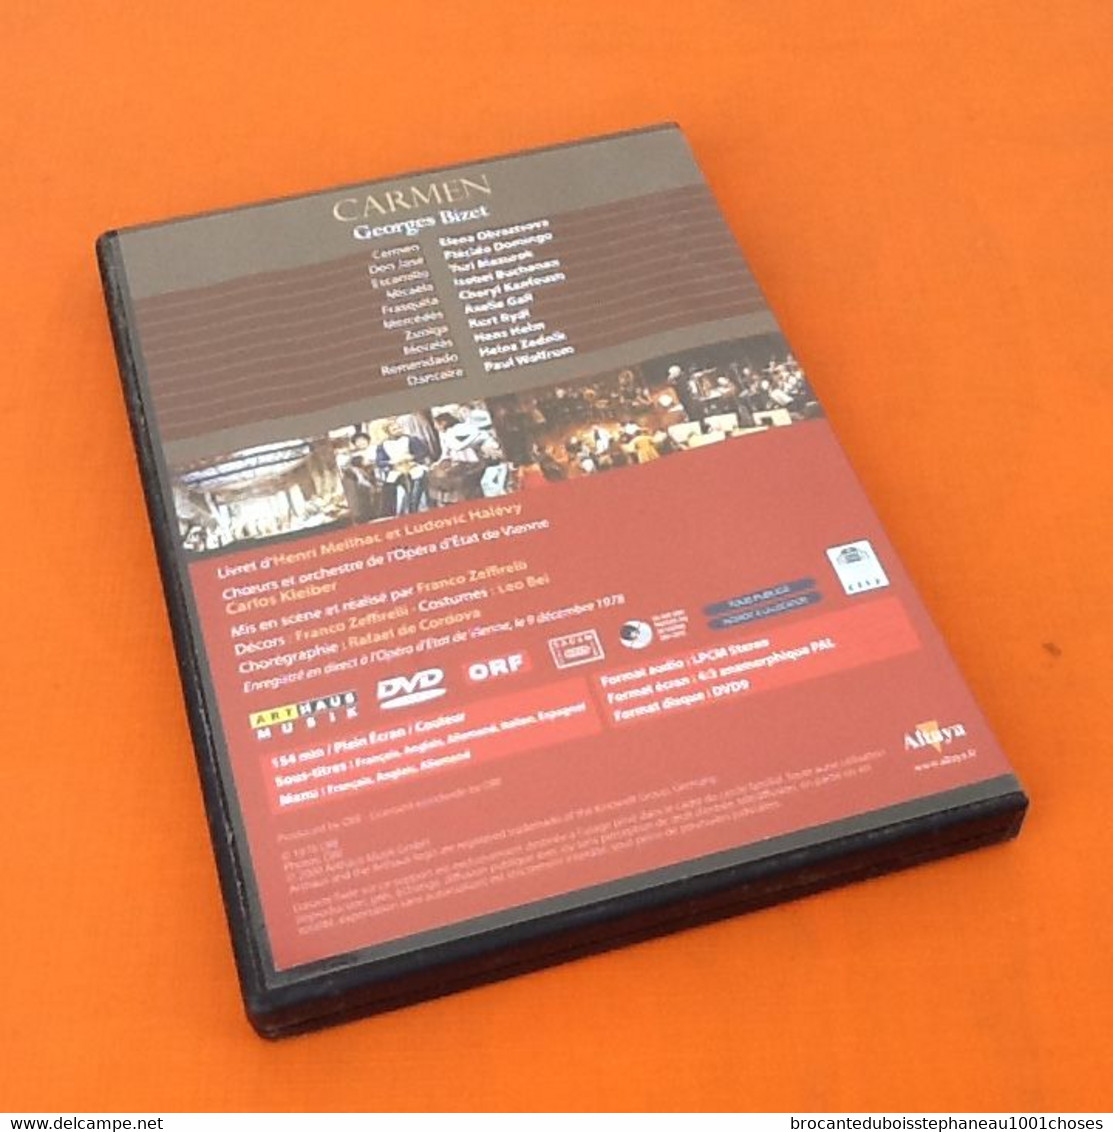 DVD  Carmen Georges Bizet   Les Plus Grands Opéras - Music On DVD